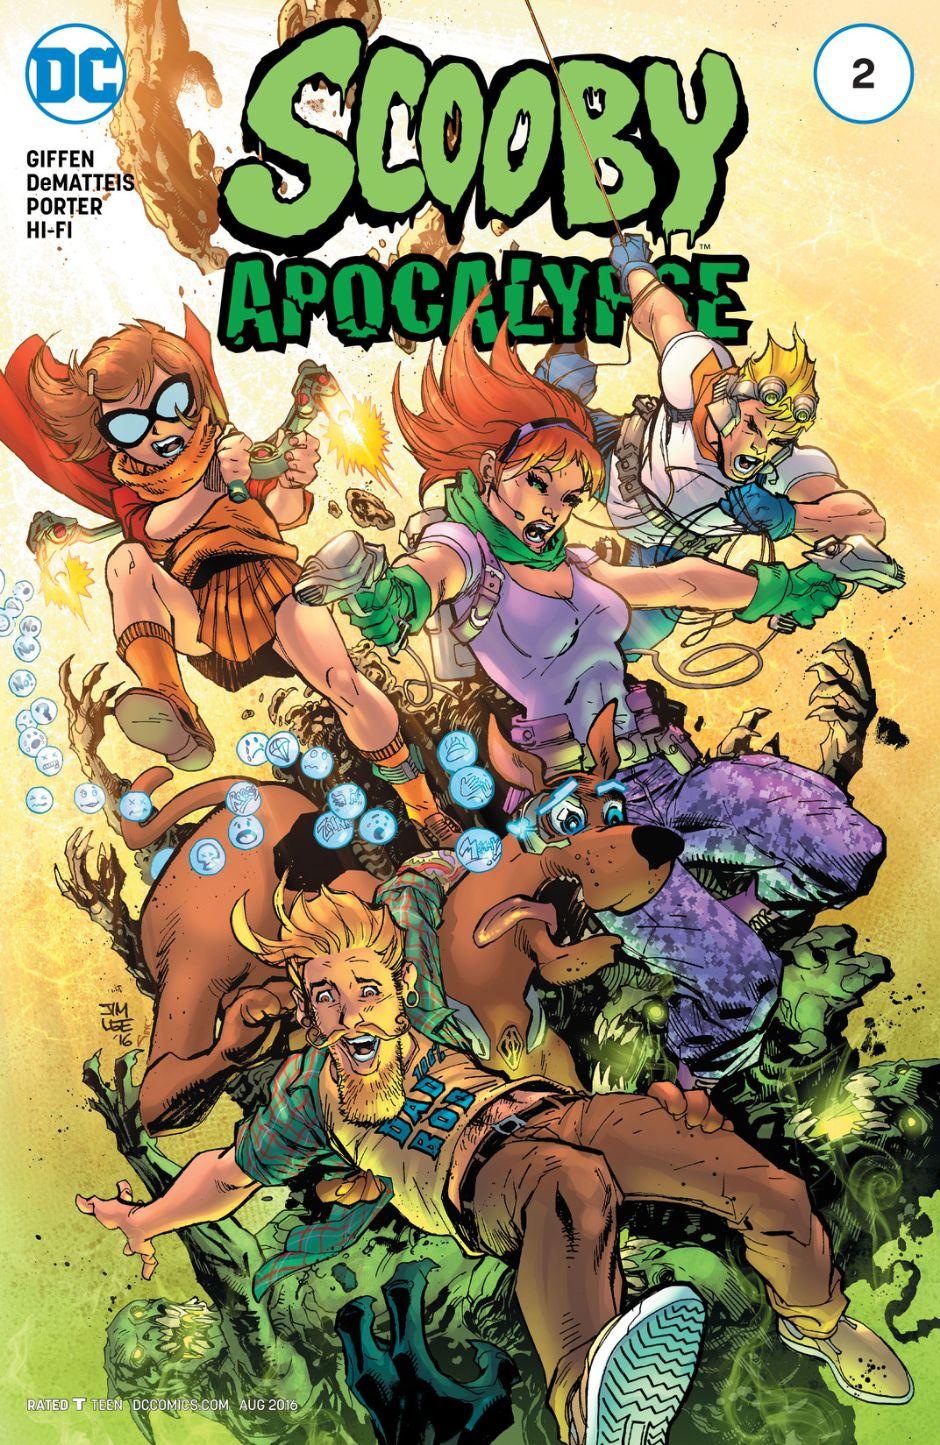 Scooby Apocalypse Vol. 1 #2